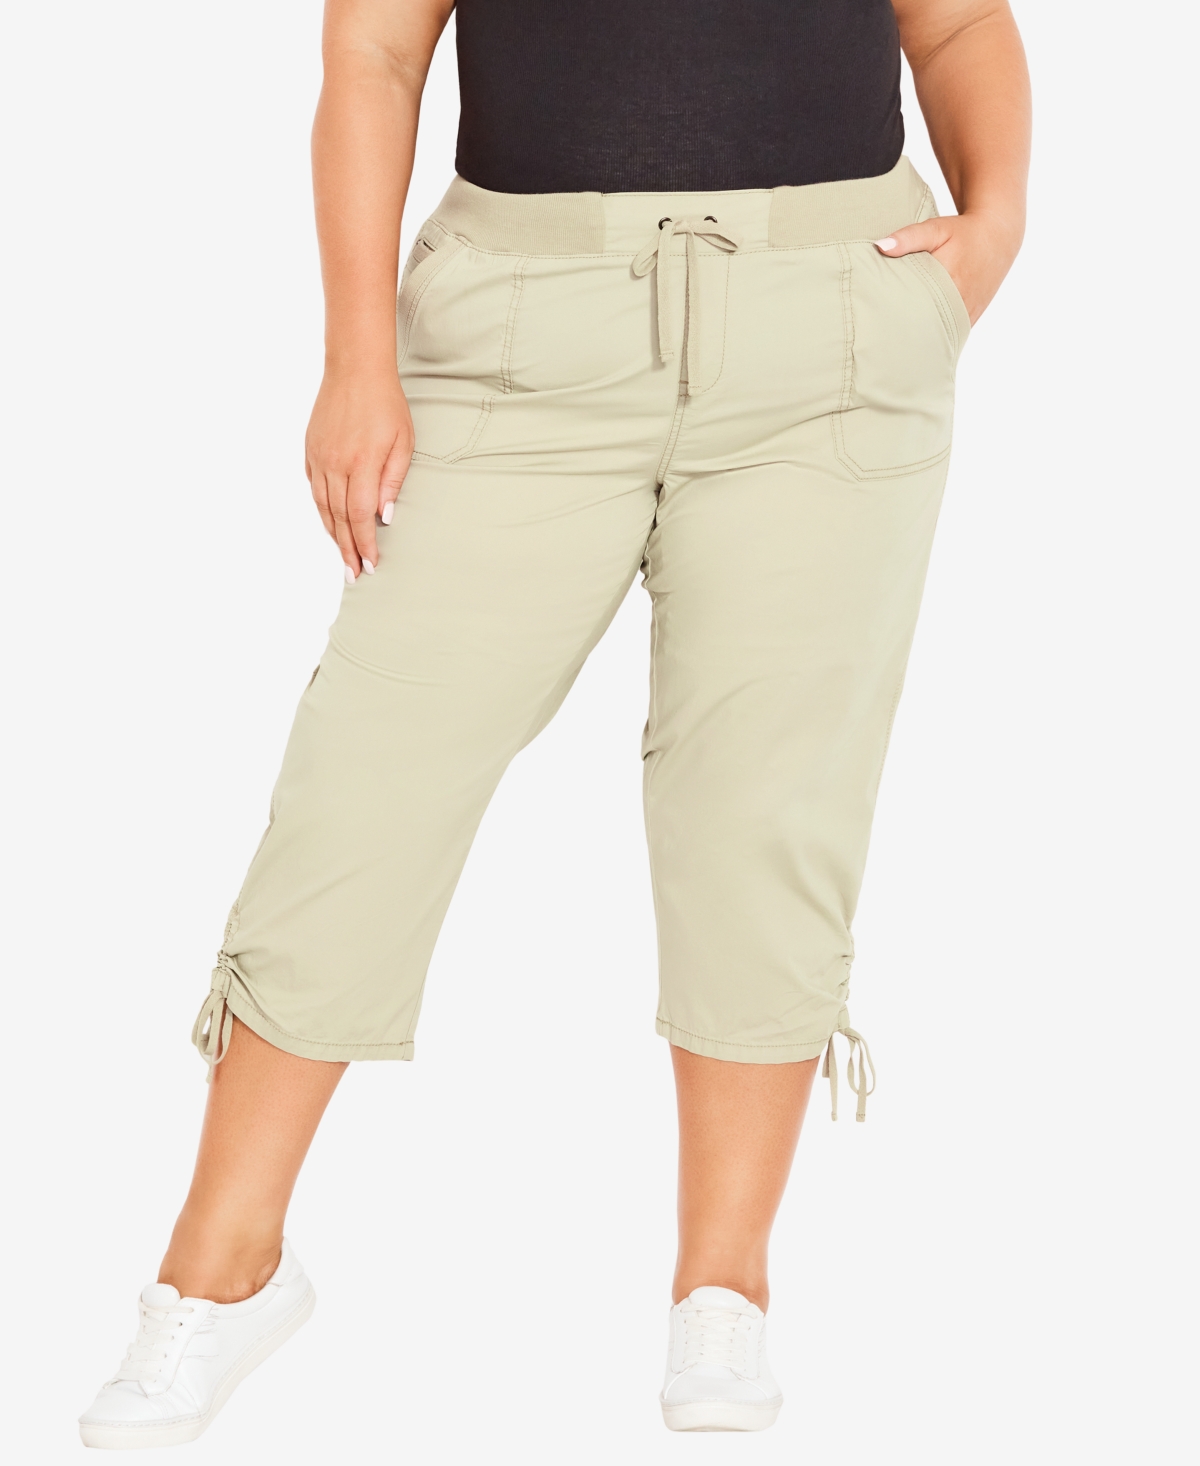 Plus Size Cotton Cinch Capri Pants - Navy